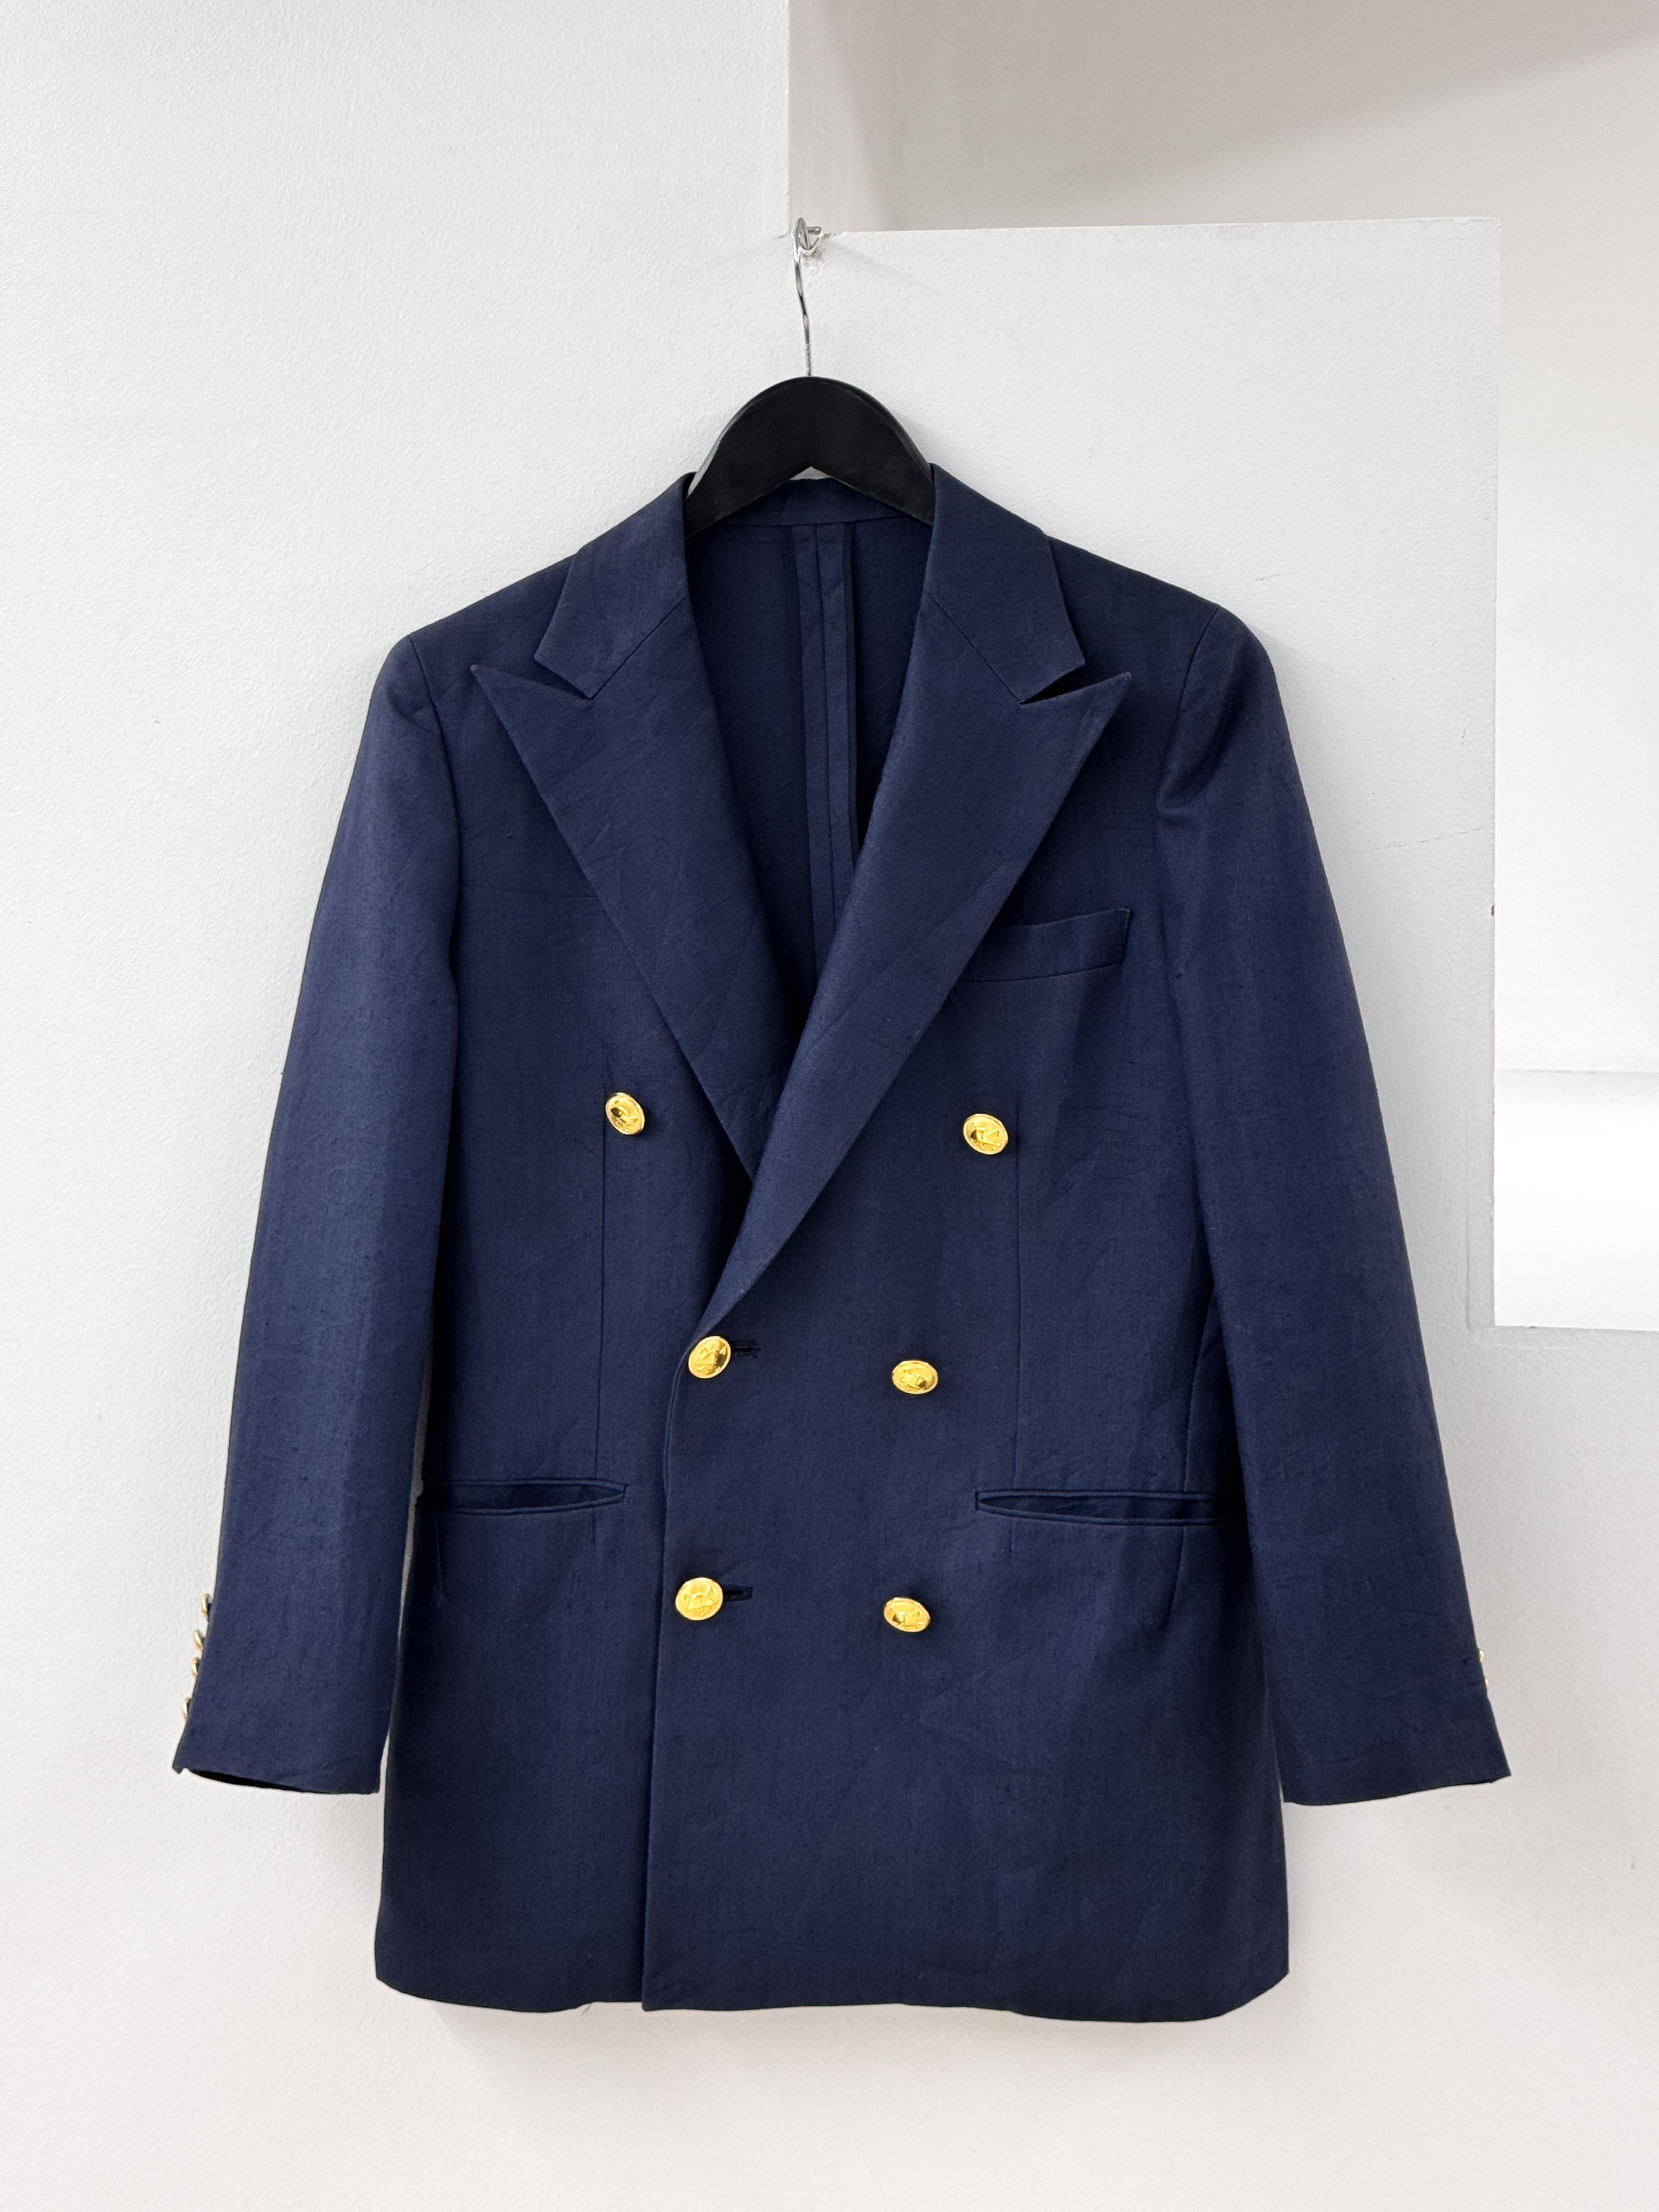 RalphLauren navy linen jacket